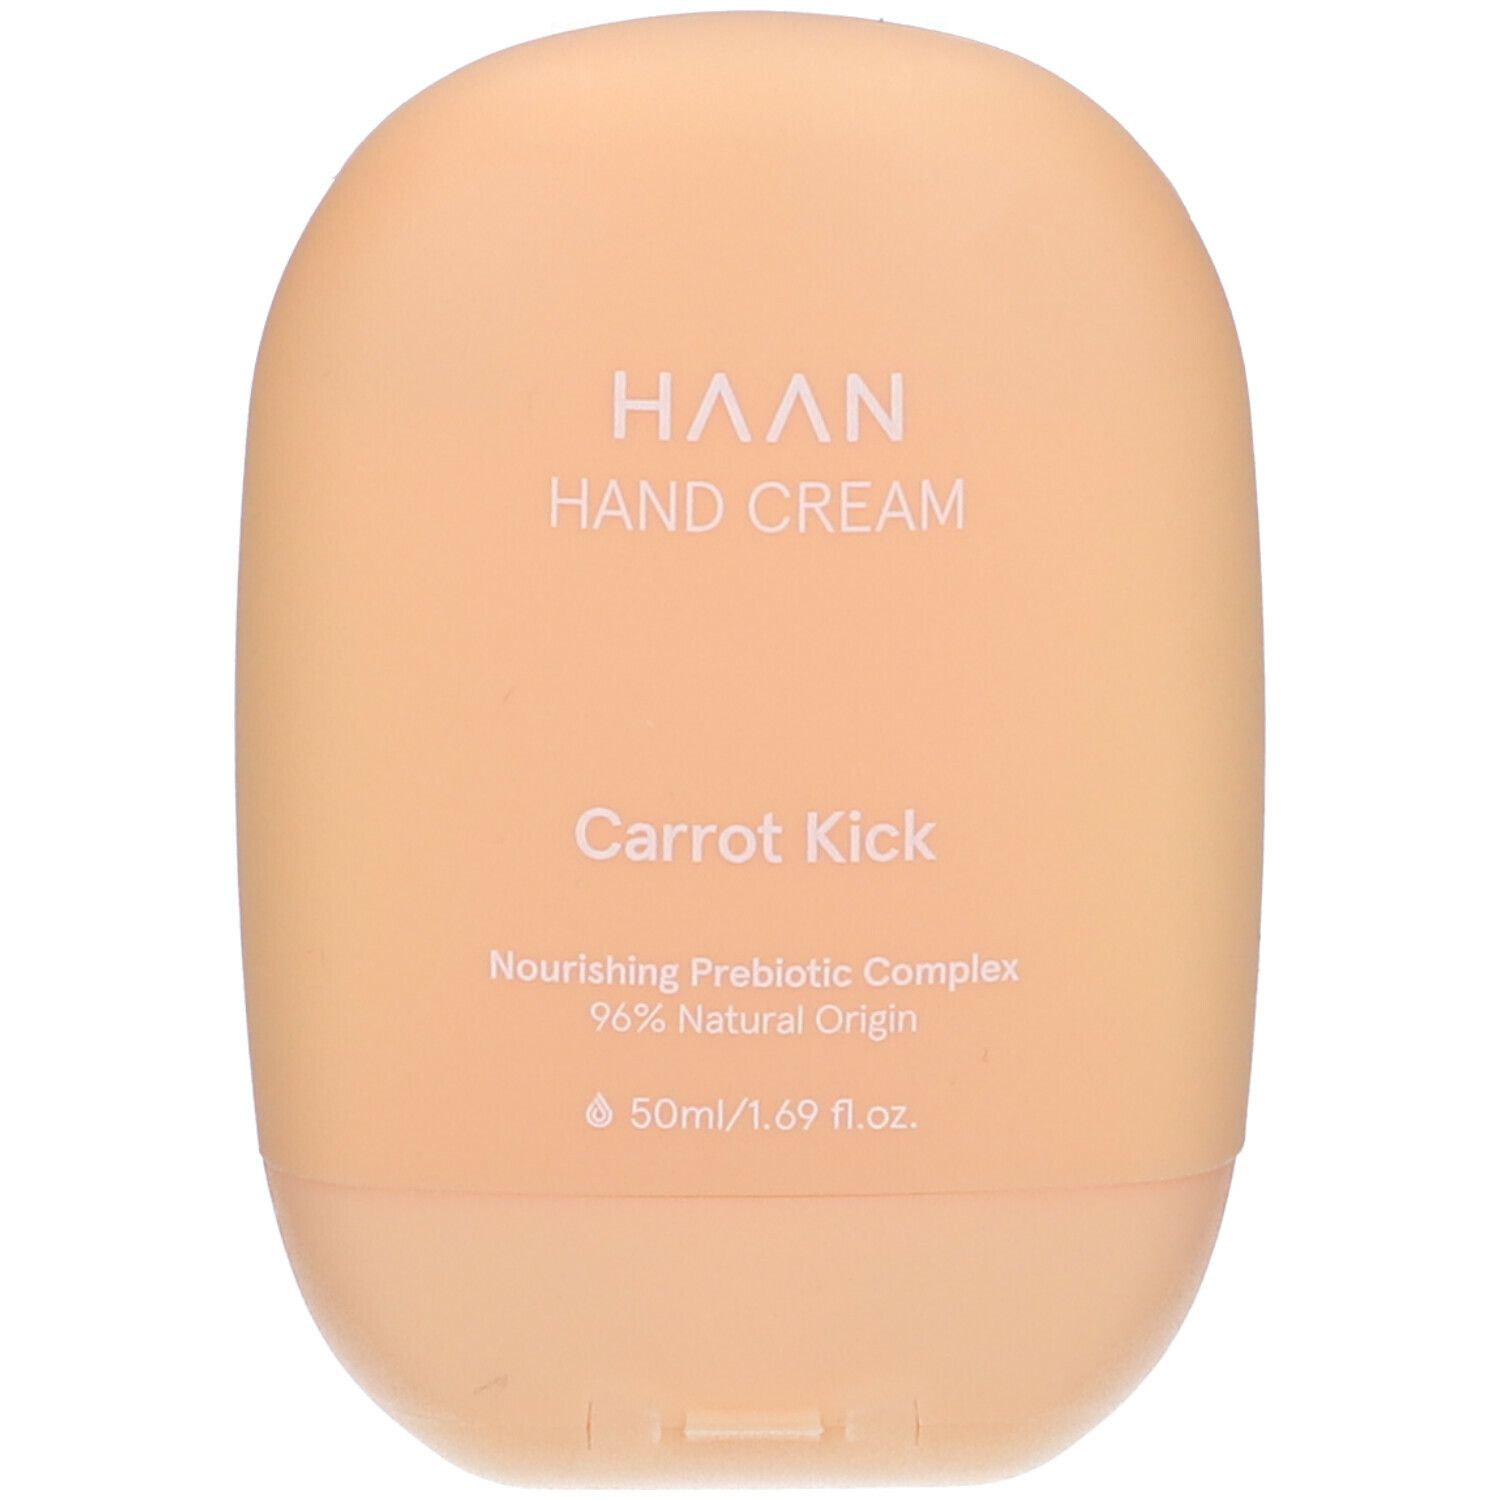 HAAN, Carrot Kick Hand Cream